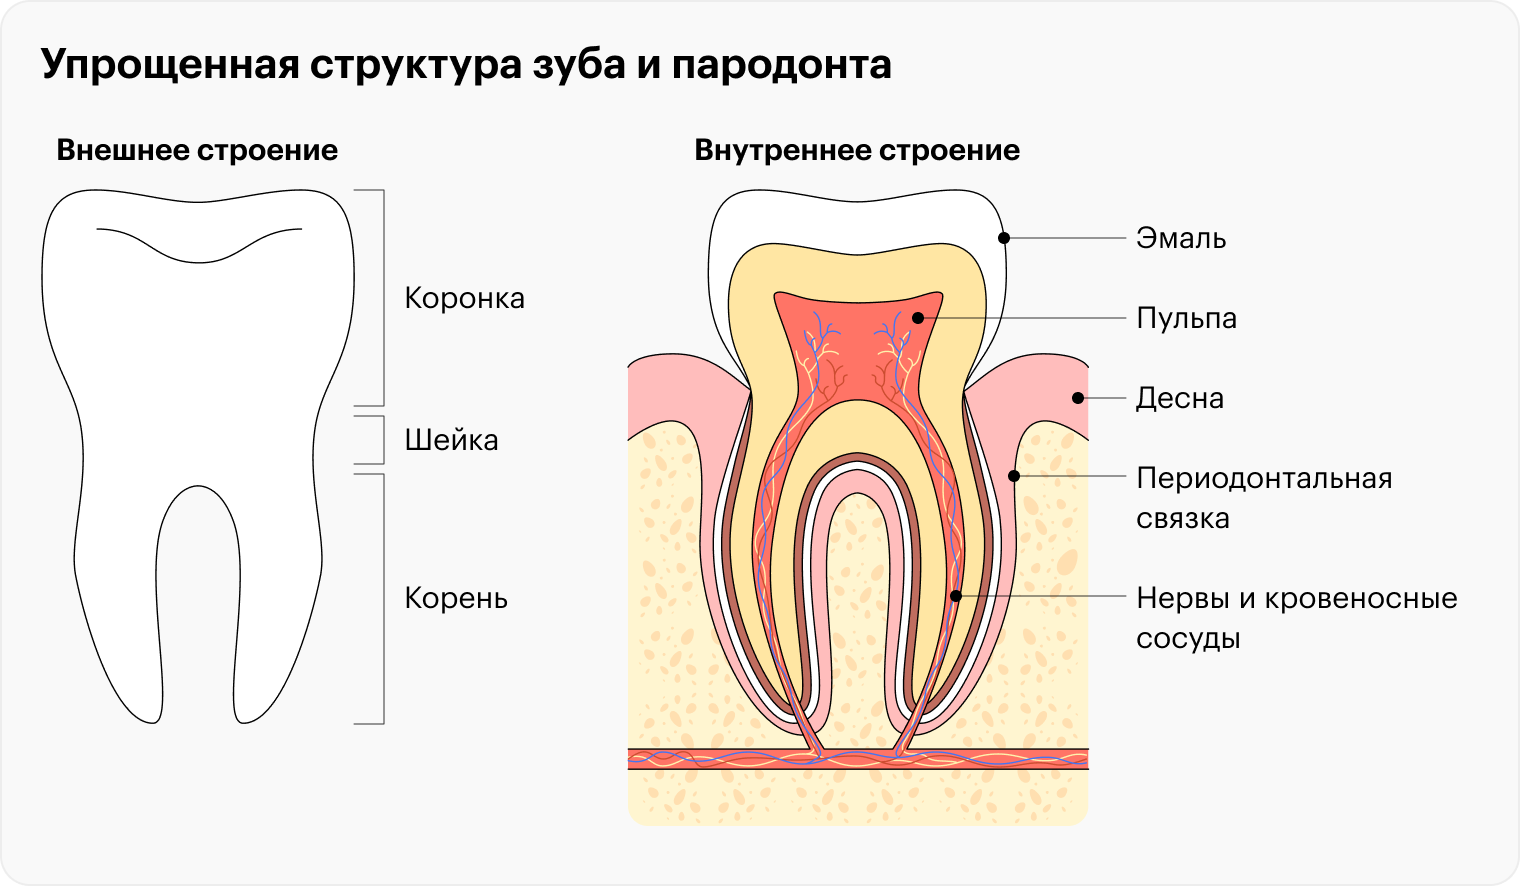 Вокруг зубов находится пародонт — комплекс тканей, благодаря которым зуб держится в десне. Это и костная лунка, и связки, которые соединяют корень зуба с костью. После трансплантации зуба у него на новом месте формируется такой же связочный аппарат — если донорский зуб был правильно удален и сохранились нужные структуры